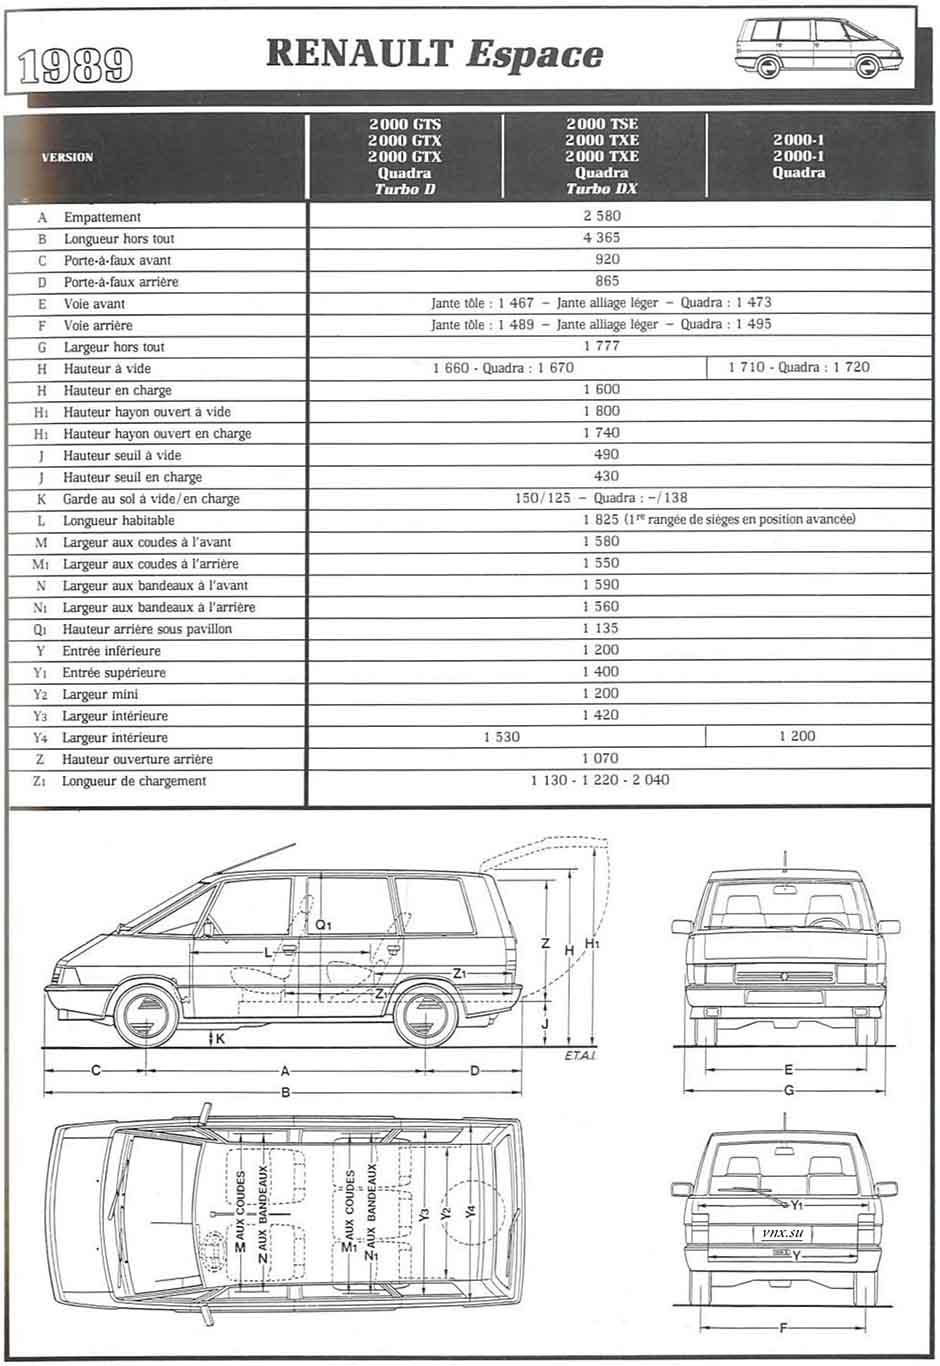 Габаритные размеры Рено Эспейс 1 (dimensions Renault Espace 1984-1991)